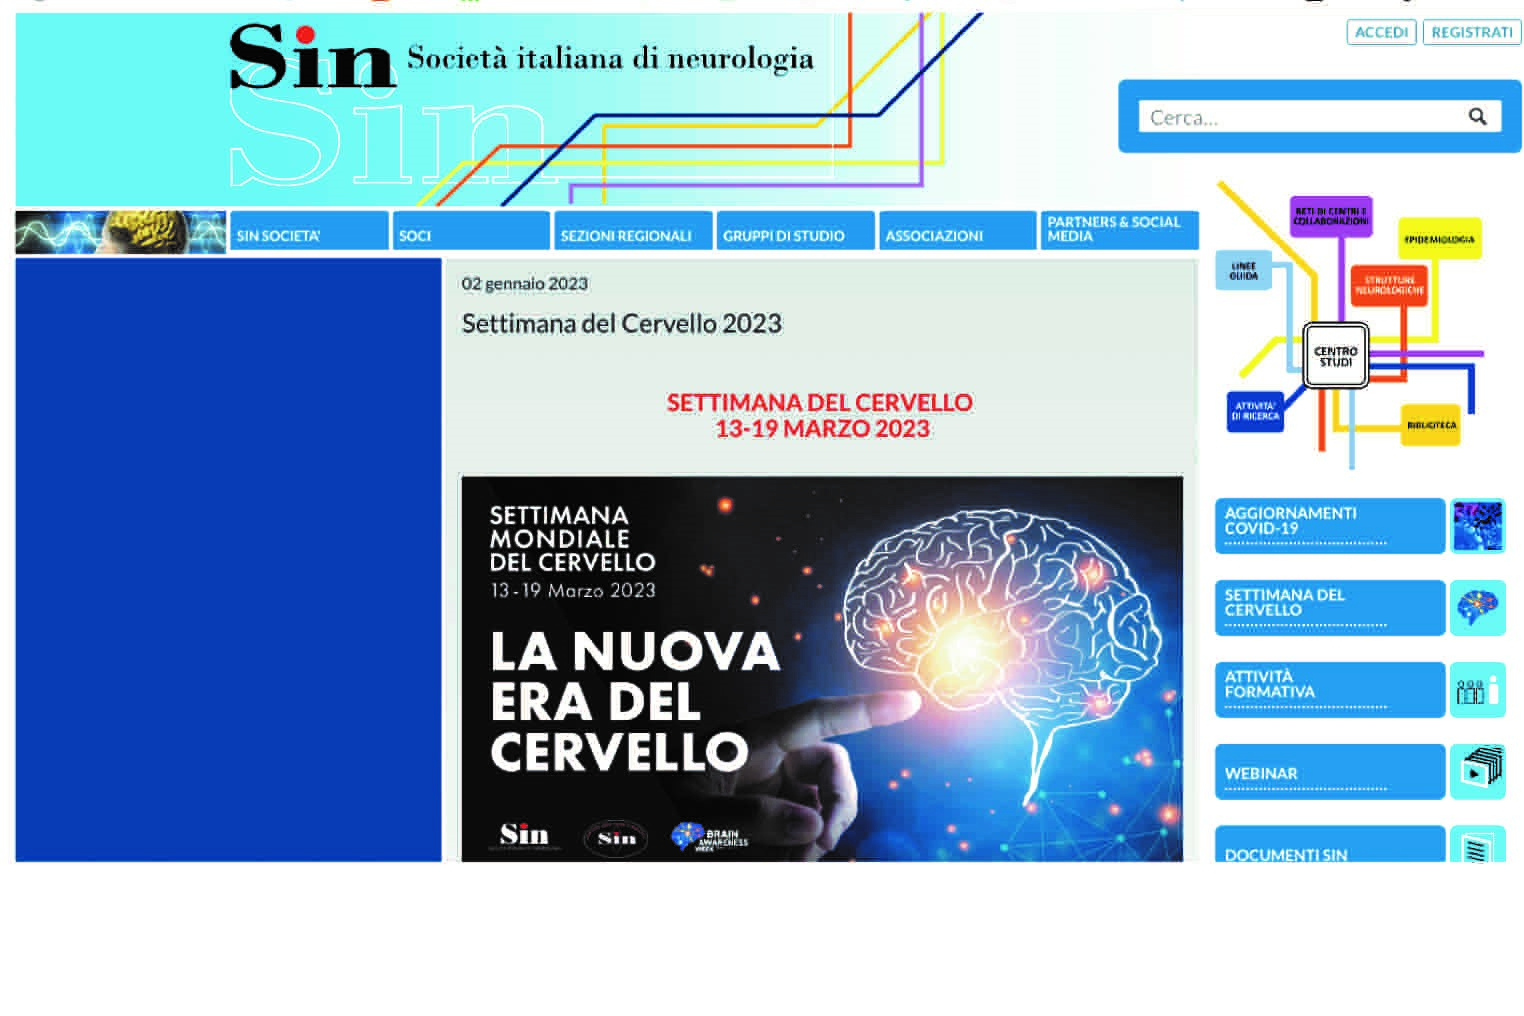 Società italiana di Neurologia: un nostro contributo tra le iniziative previste nella Settimana del cervello 2023.